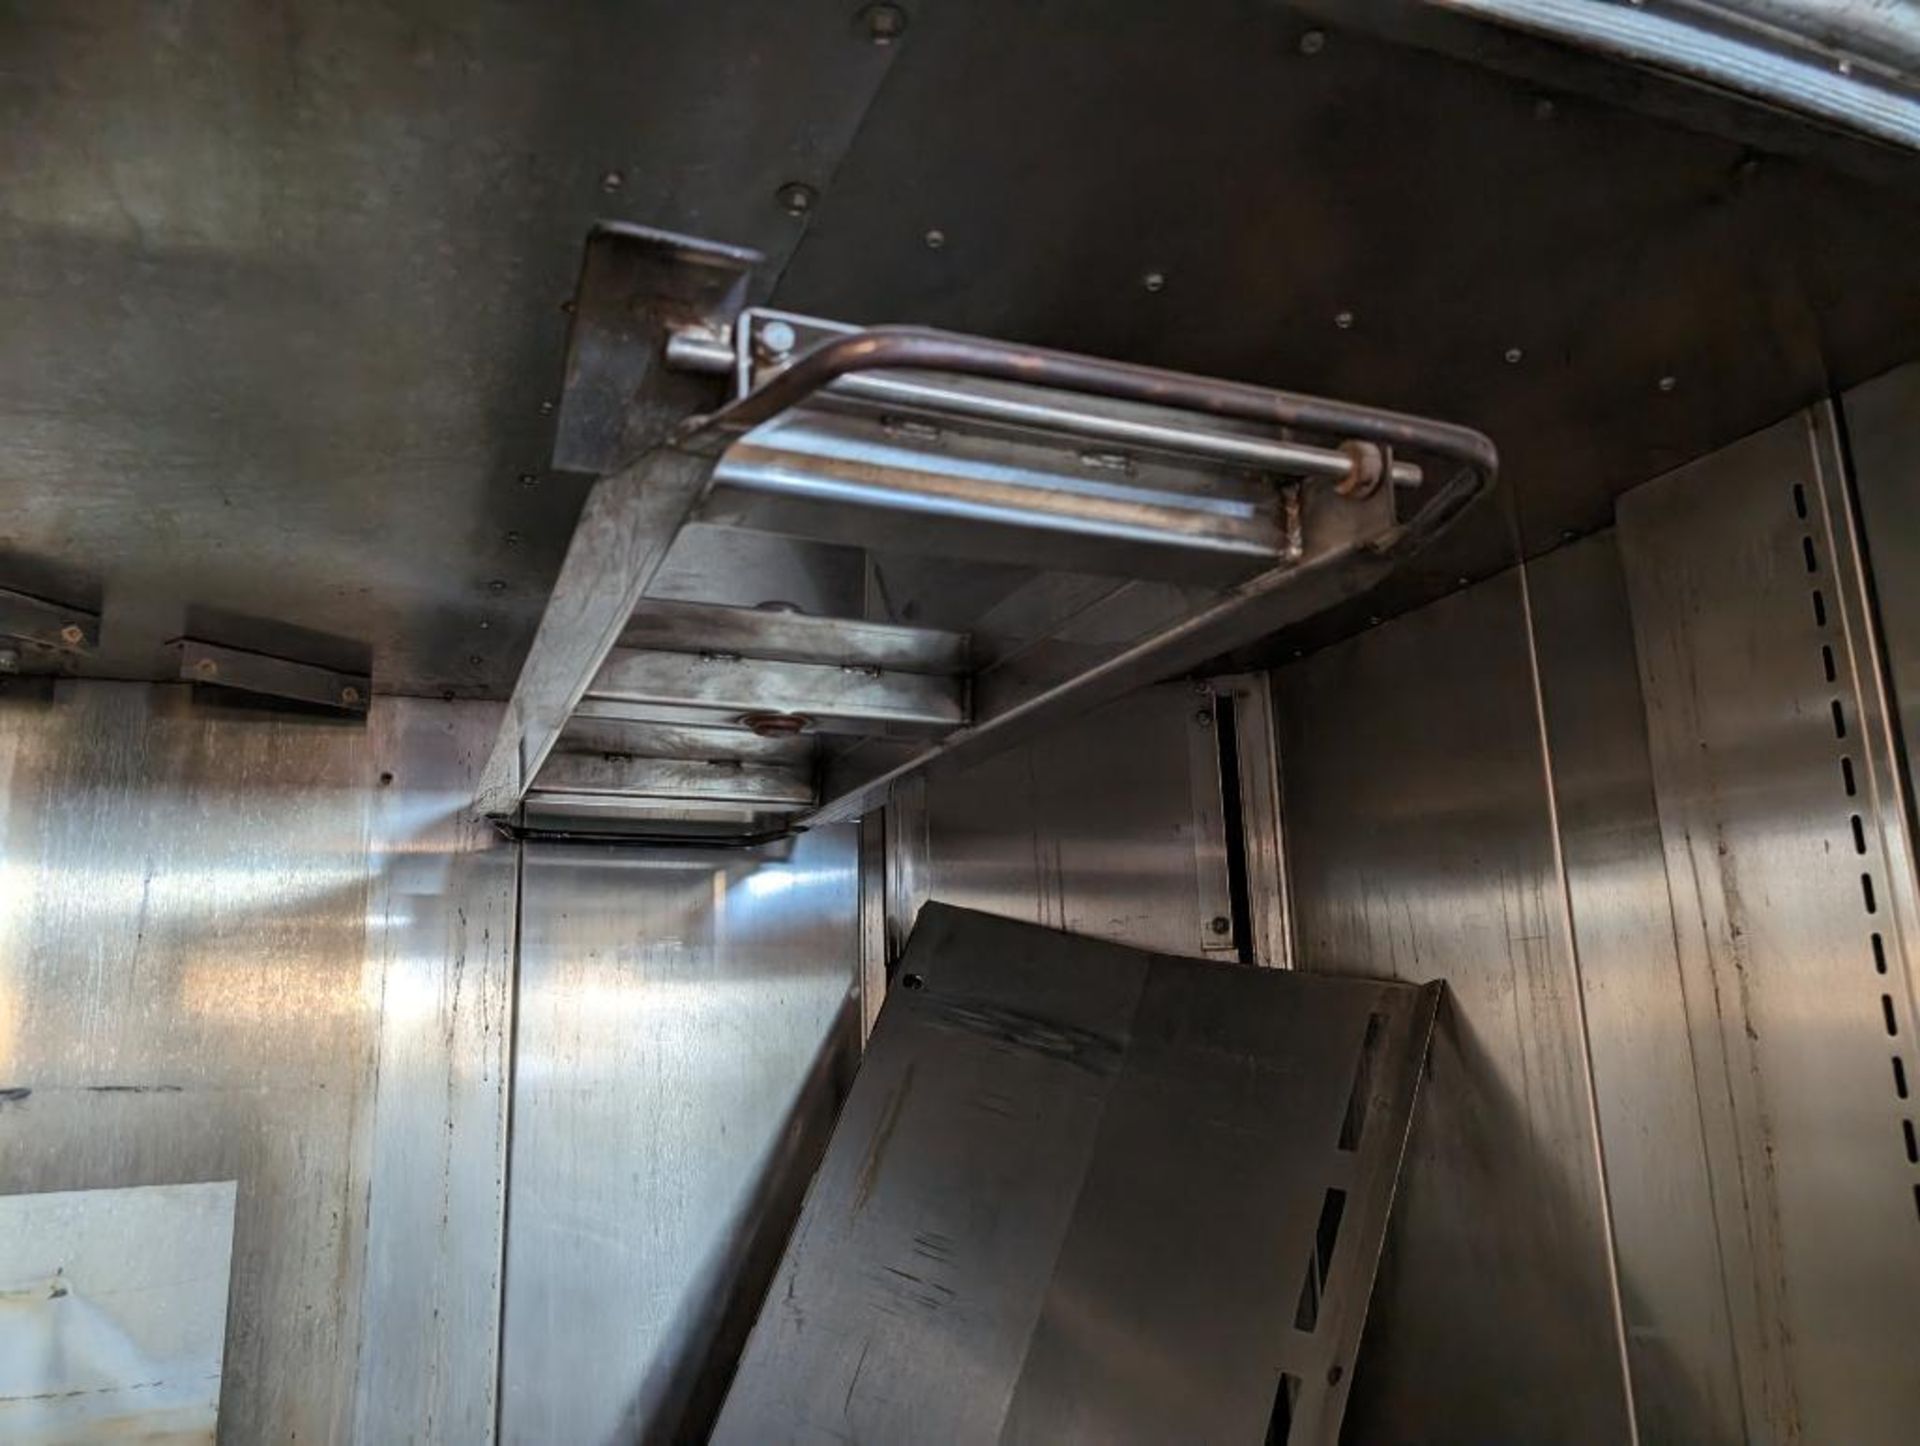 Hobart double rack oven - Image 4 of 9